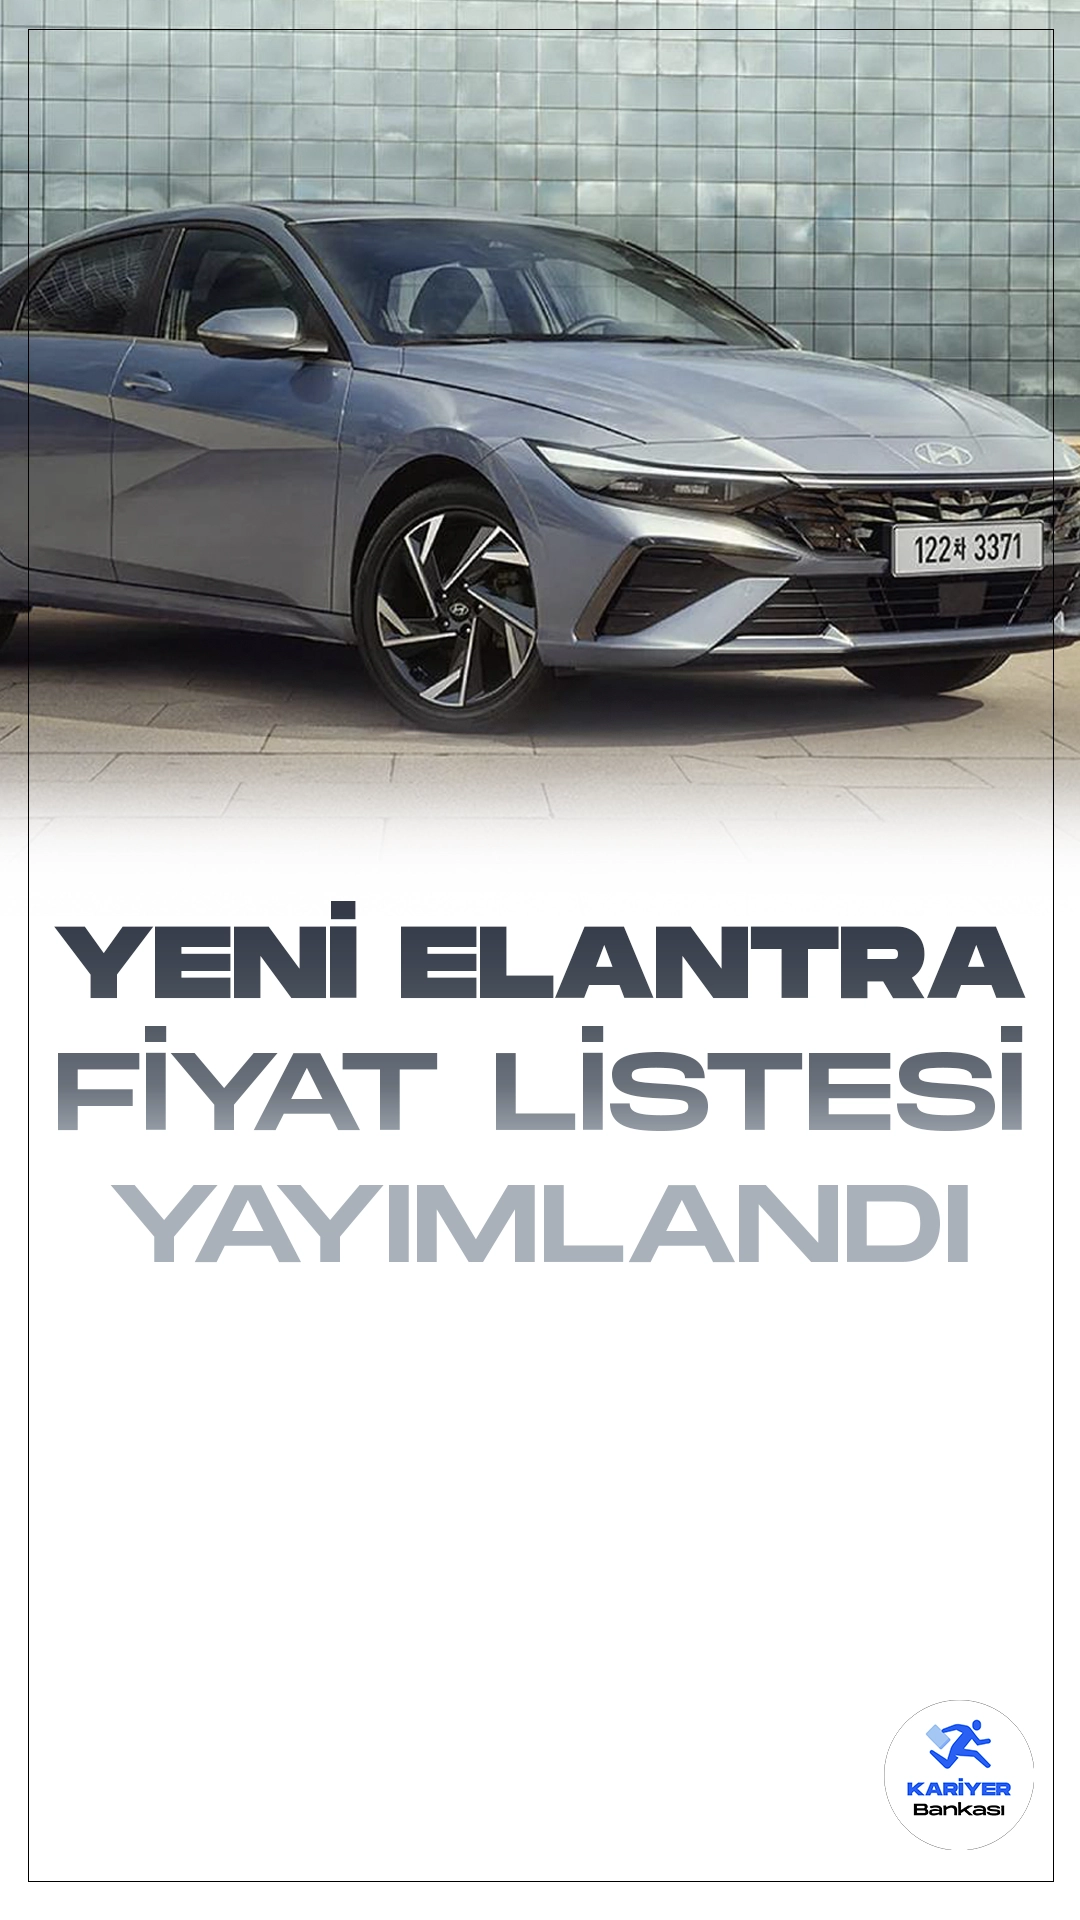 Hyundai Elantra Şubat 2024 Fiyat Listesi Yayımlandı.Hyundai, otomotiv endüstrisindeki etkileyici ürün yelpazesine bir yenisini daha ekliyor. Yenilikçi tasarımı ve teknolojik özellikleriyle dikkat çeken Hyundai Elantra, kullanıcıların beklentilerini karşılıyor.